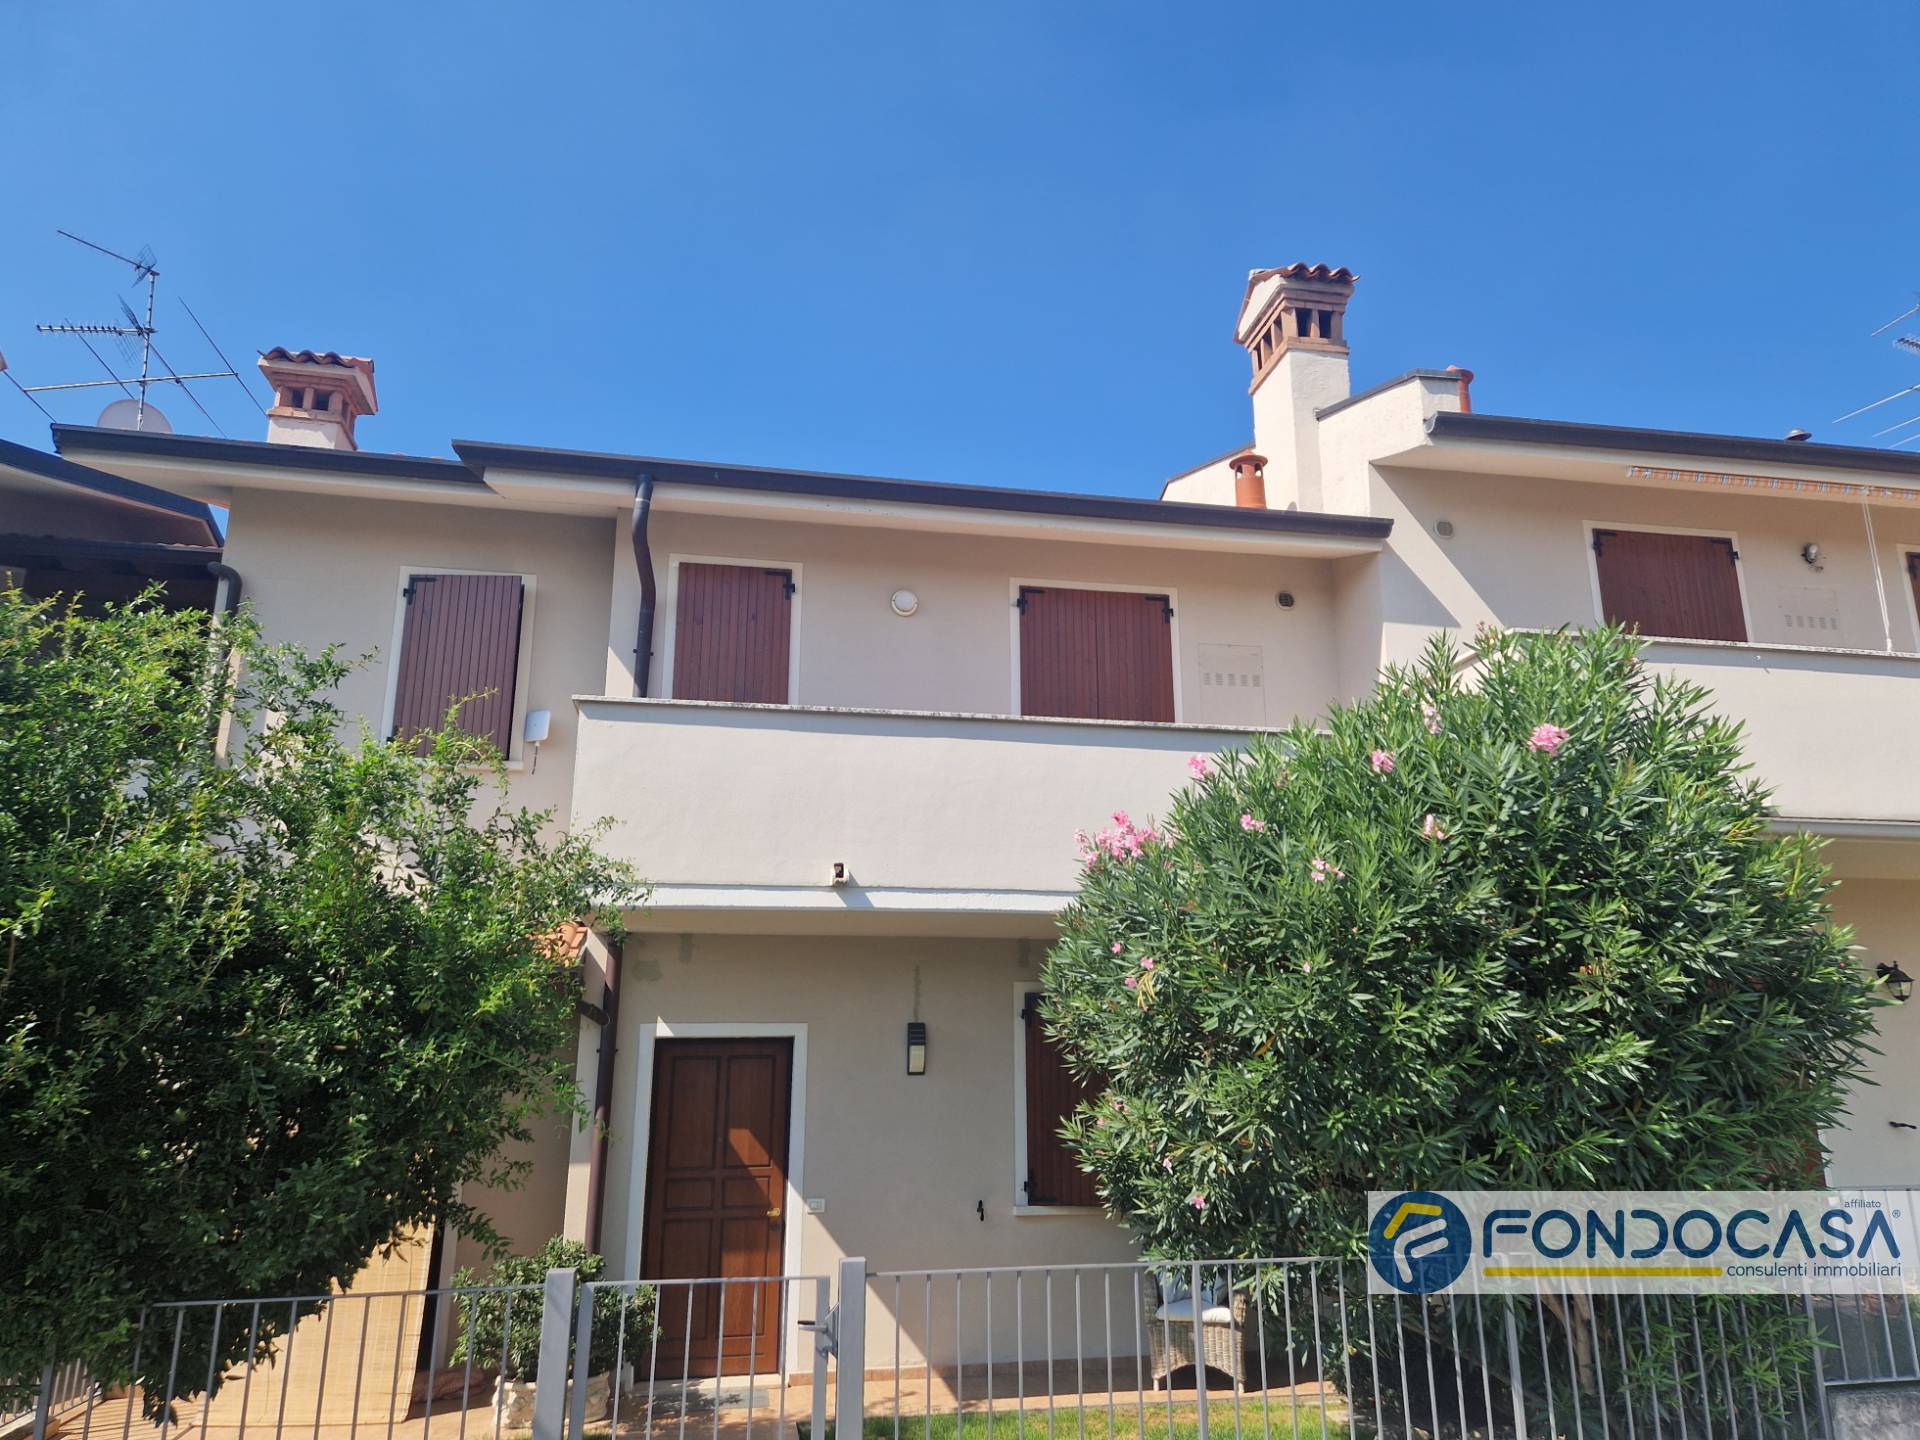 Appartamento in vendita a Rodengo-Saiano, 3 locali, prezzo € 165.000 | PortaleAgenzieImmobiliari.it